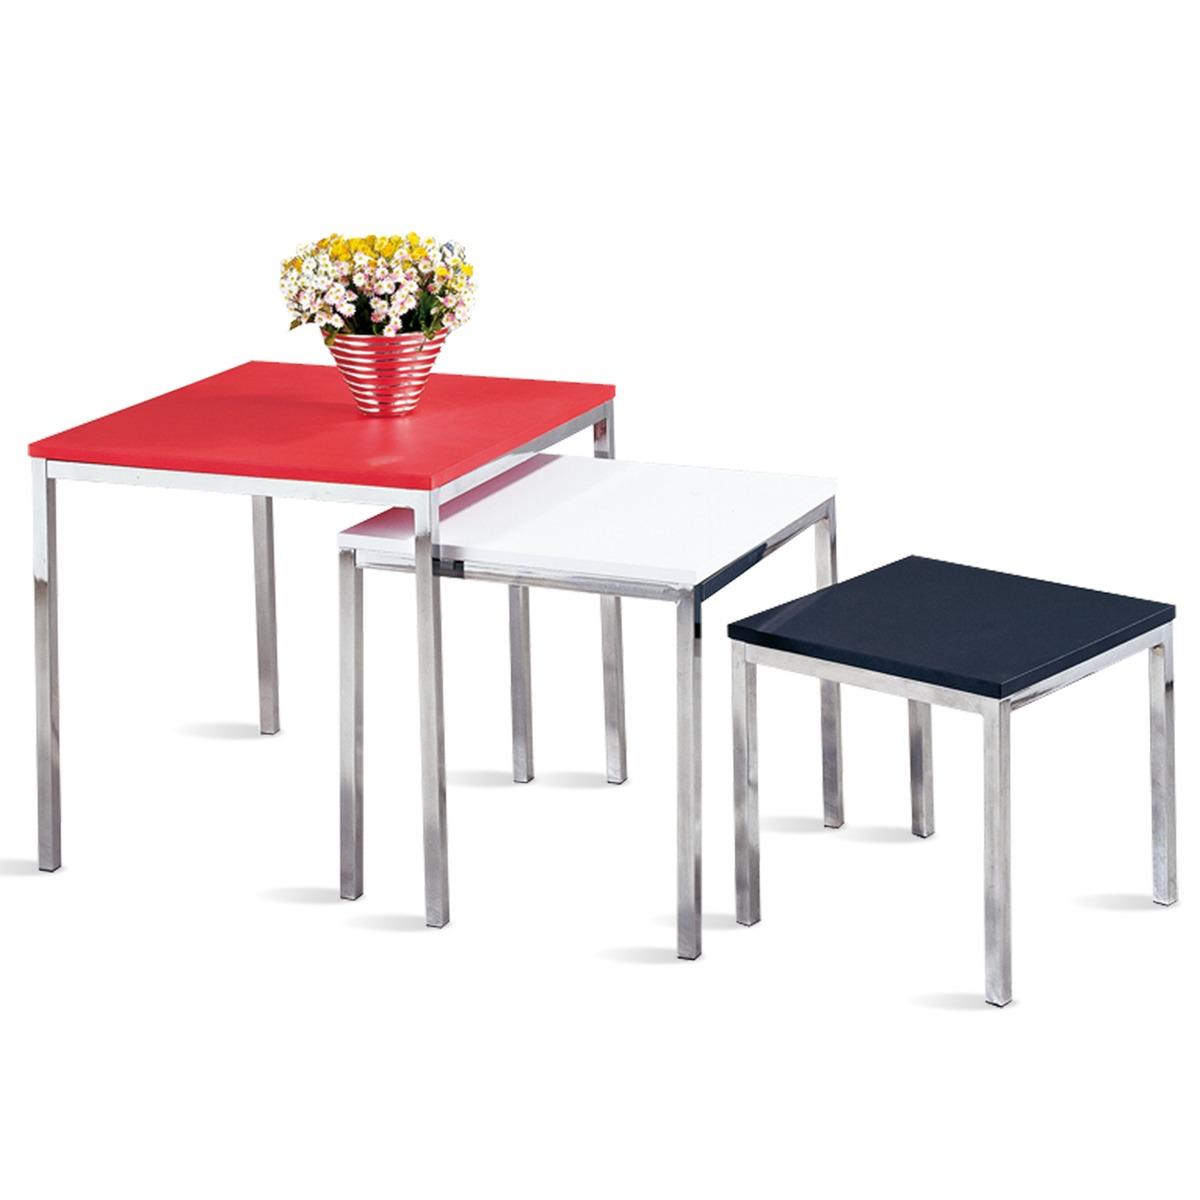 Ensemble 3 tables gigognes carrées - 50, 42, 34 cm - Rouge, blanc, noir